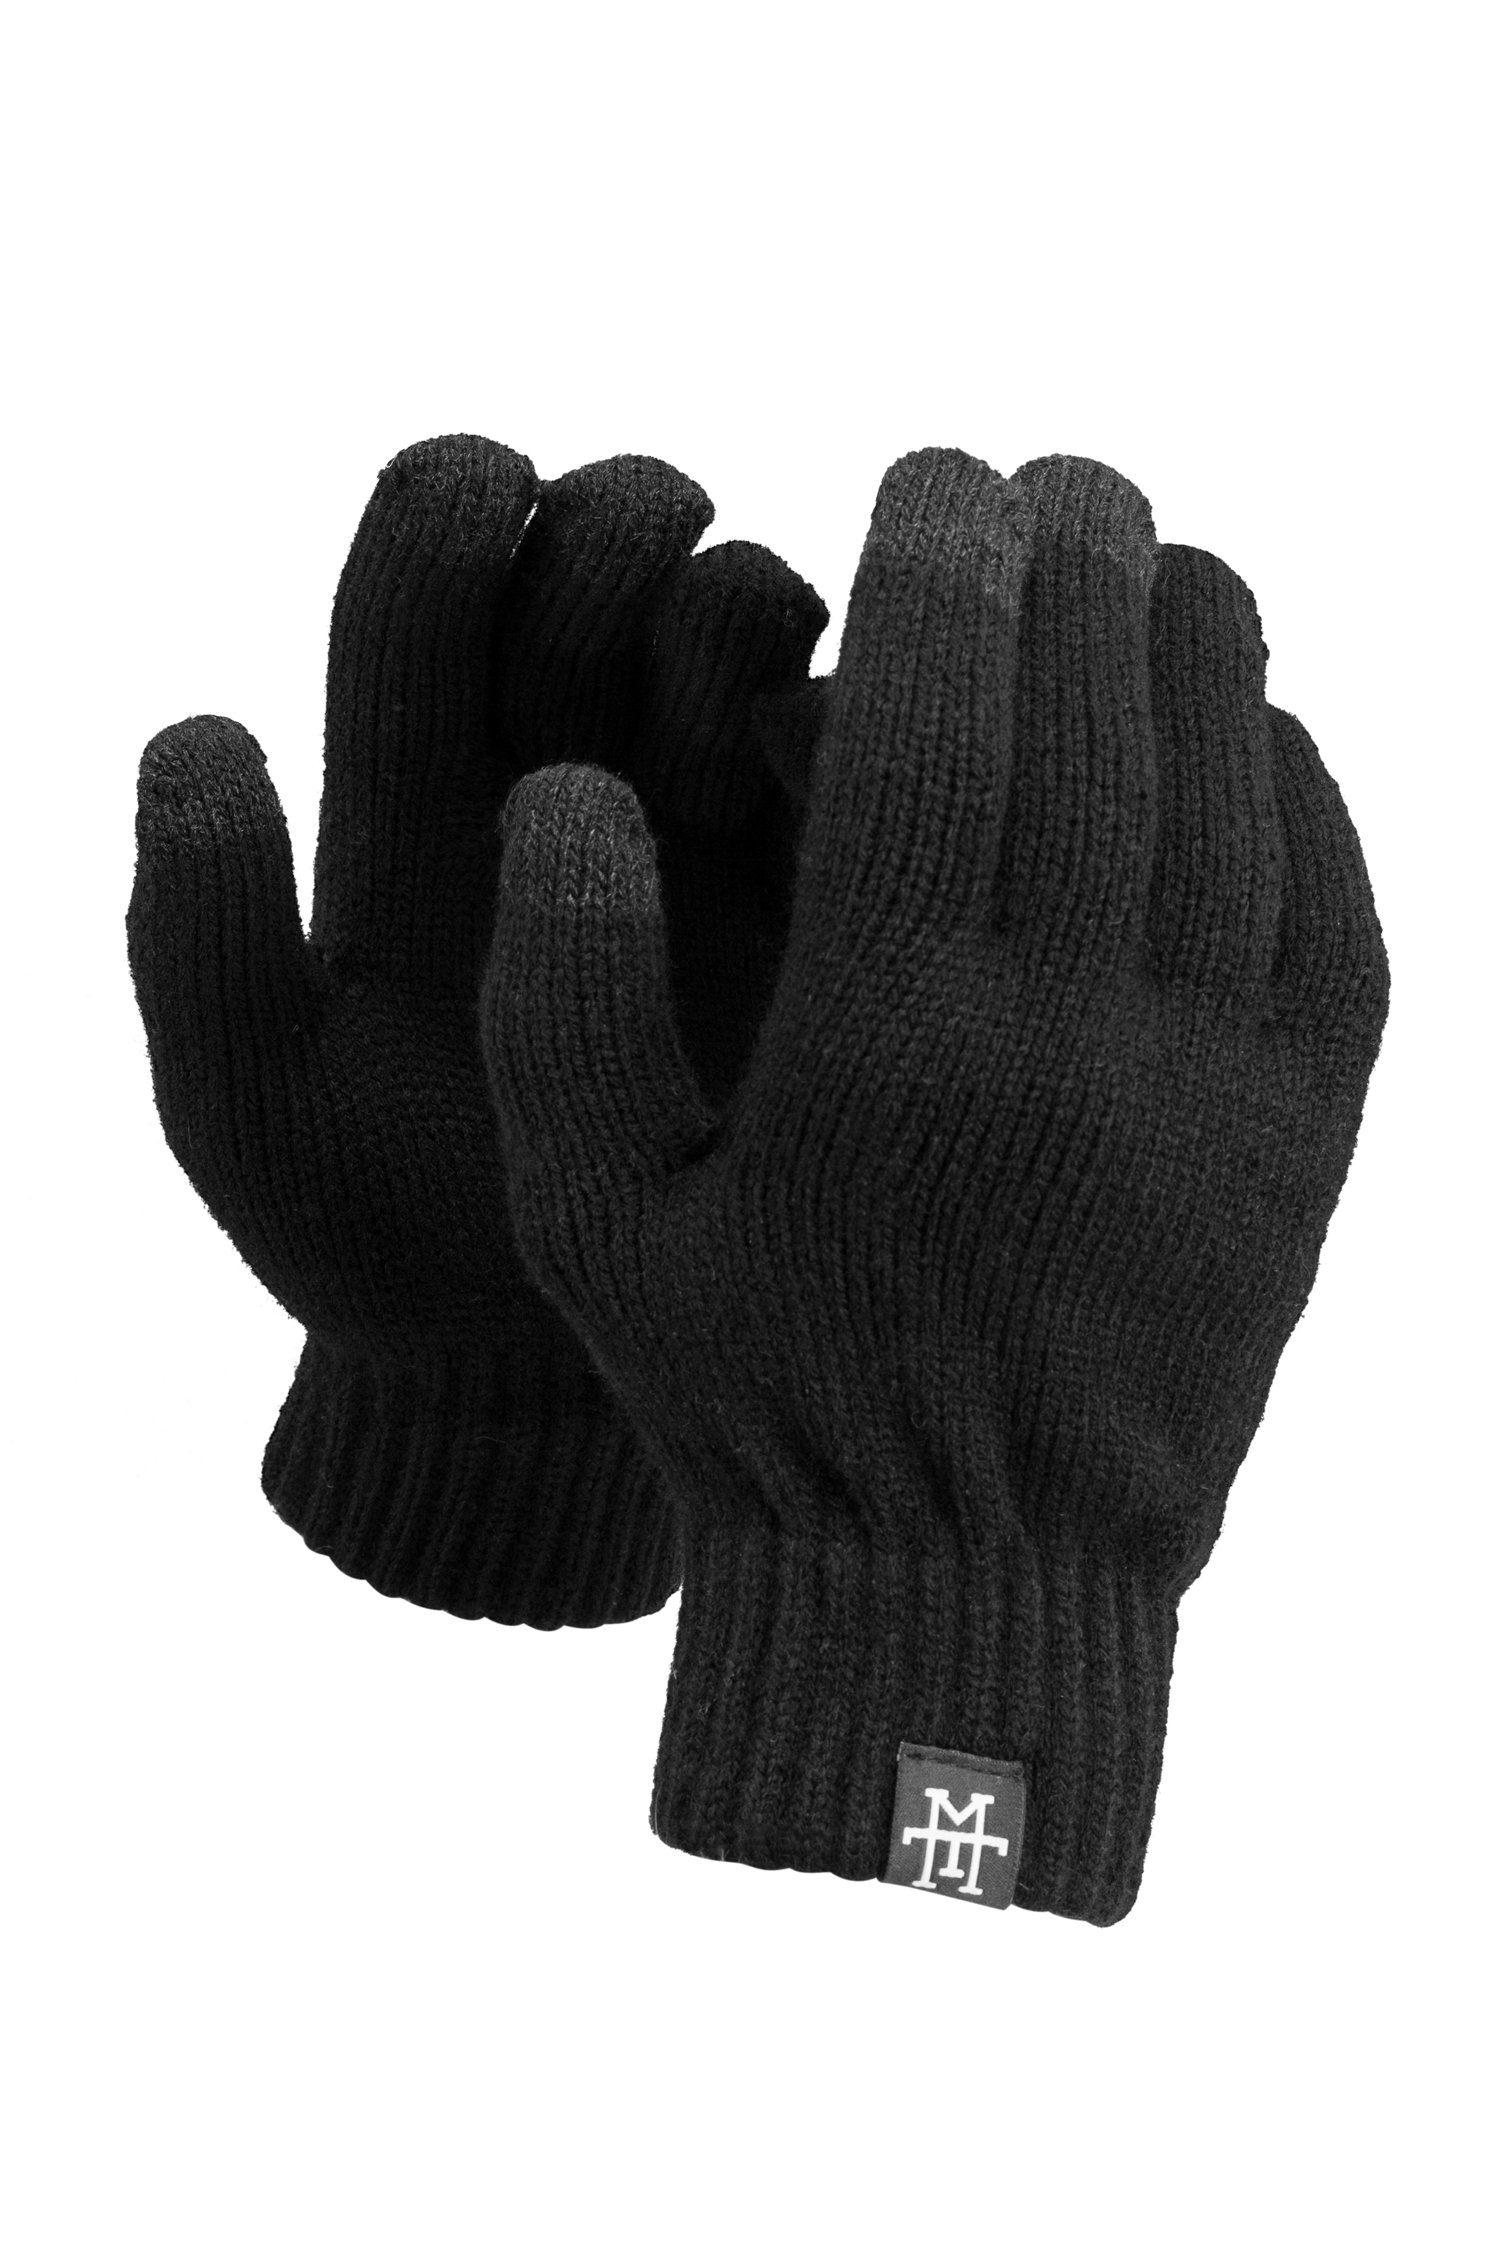 Futter Smart Gloves Manufaktur13 Baumwollhandschuhe Smartphone - Asphalt Thinsulate mit Handschuhe